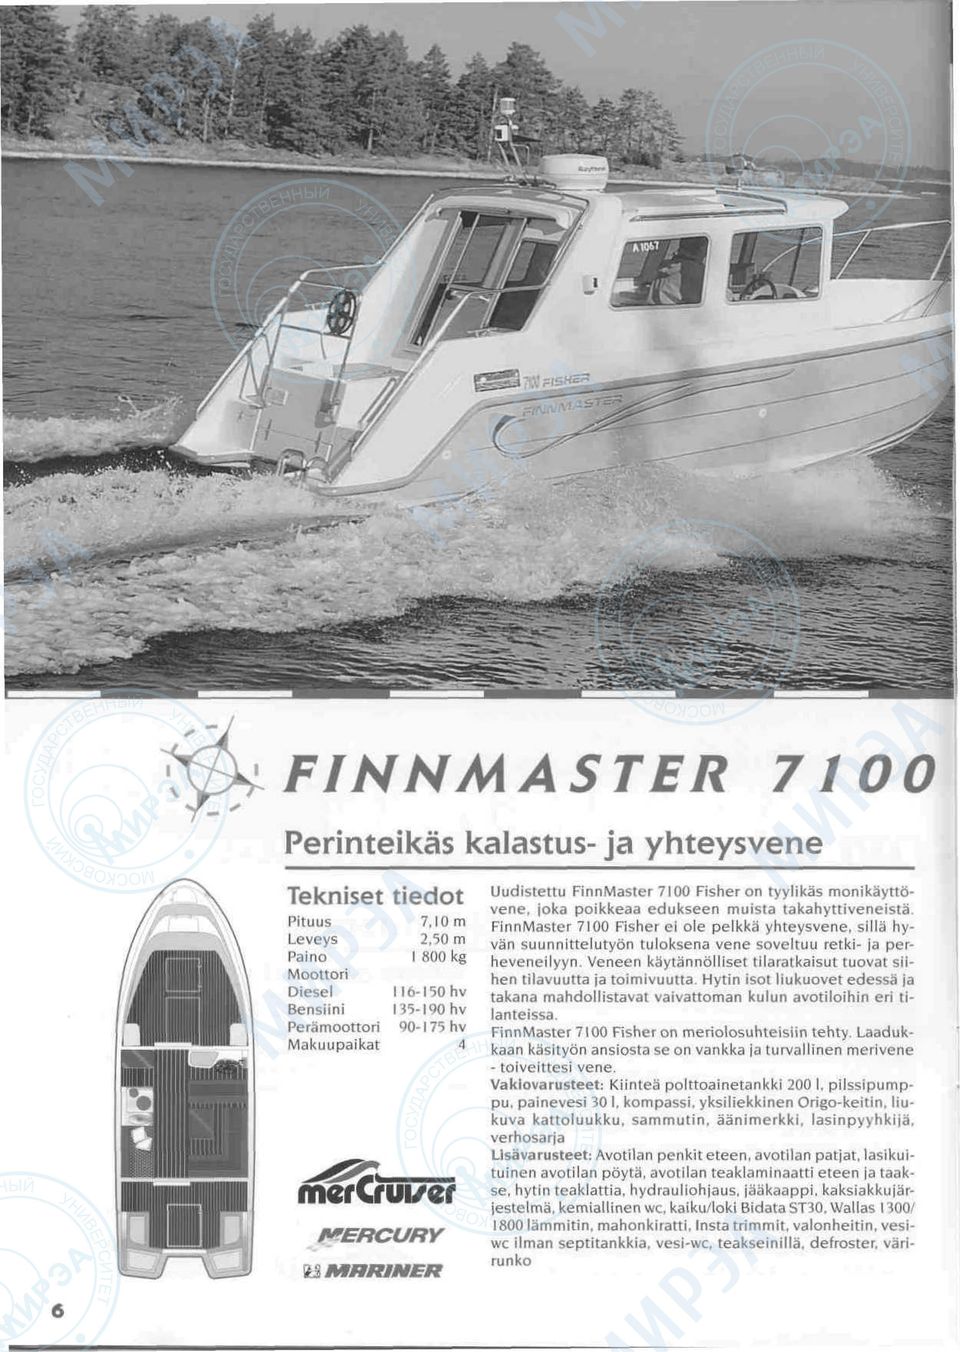 FinnMaster 7100 Fisher ei ole pelkka yhteysvene, silla hyvan suunnittelutyon tuloksena vene soveltuu retki- ja perheveneilyyn.